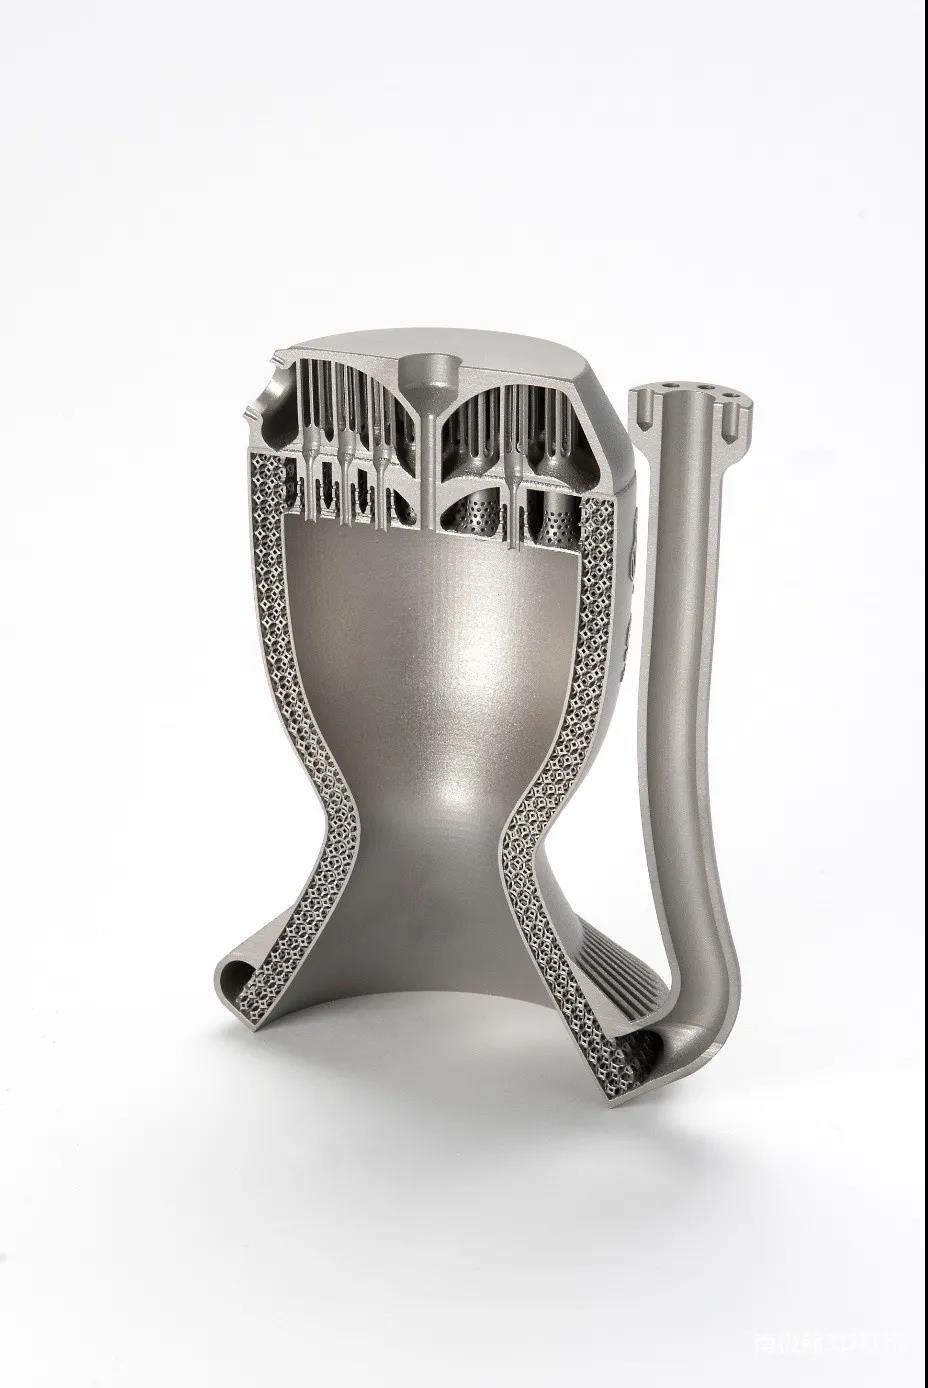 SLM Solutions合作引入Elementum 3D打印金属材料